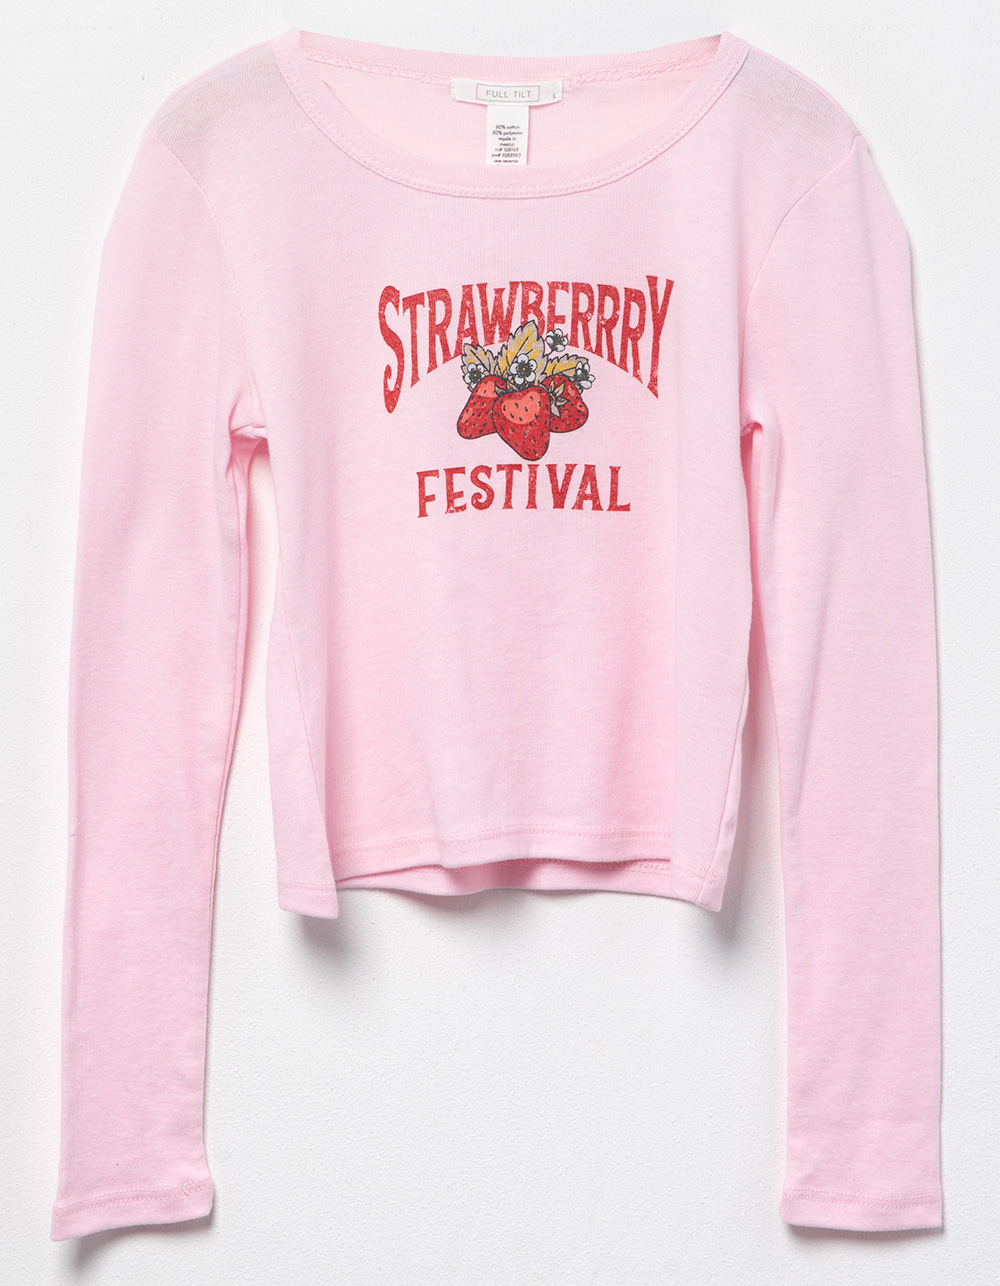 FULL TILT Strawberry Festival Baby Tillys PINK | - Girls LIGHT Sleeve Tee Long